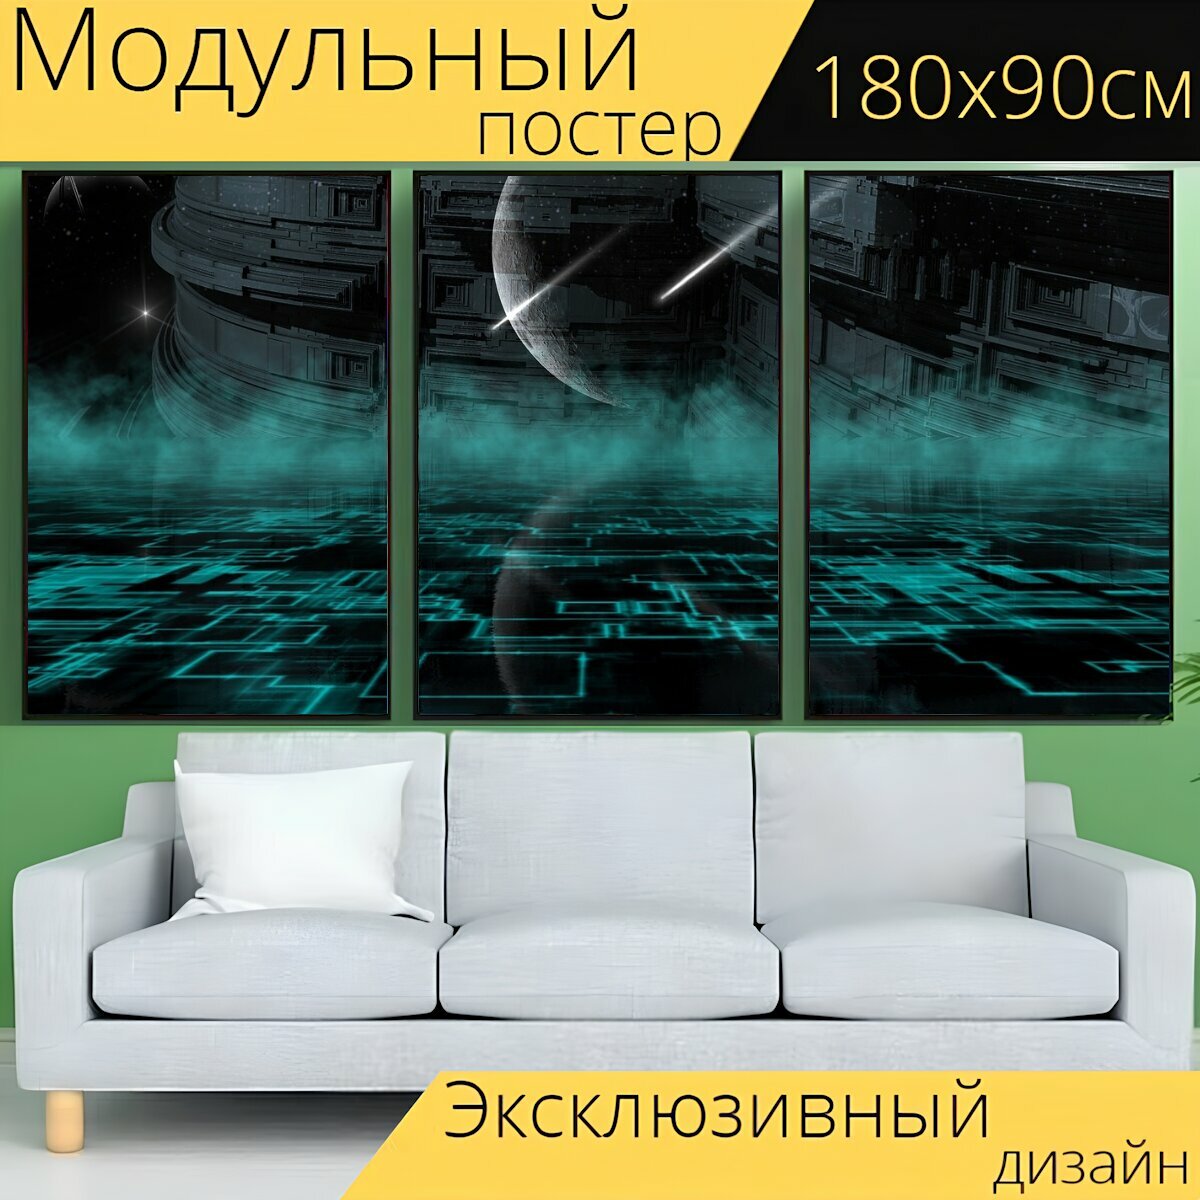 Модульный постер "Планеты, космический корабль, электроника" 180 x 90 см. для интерьера